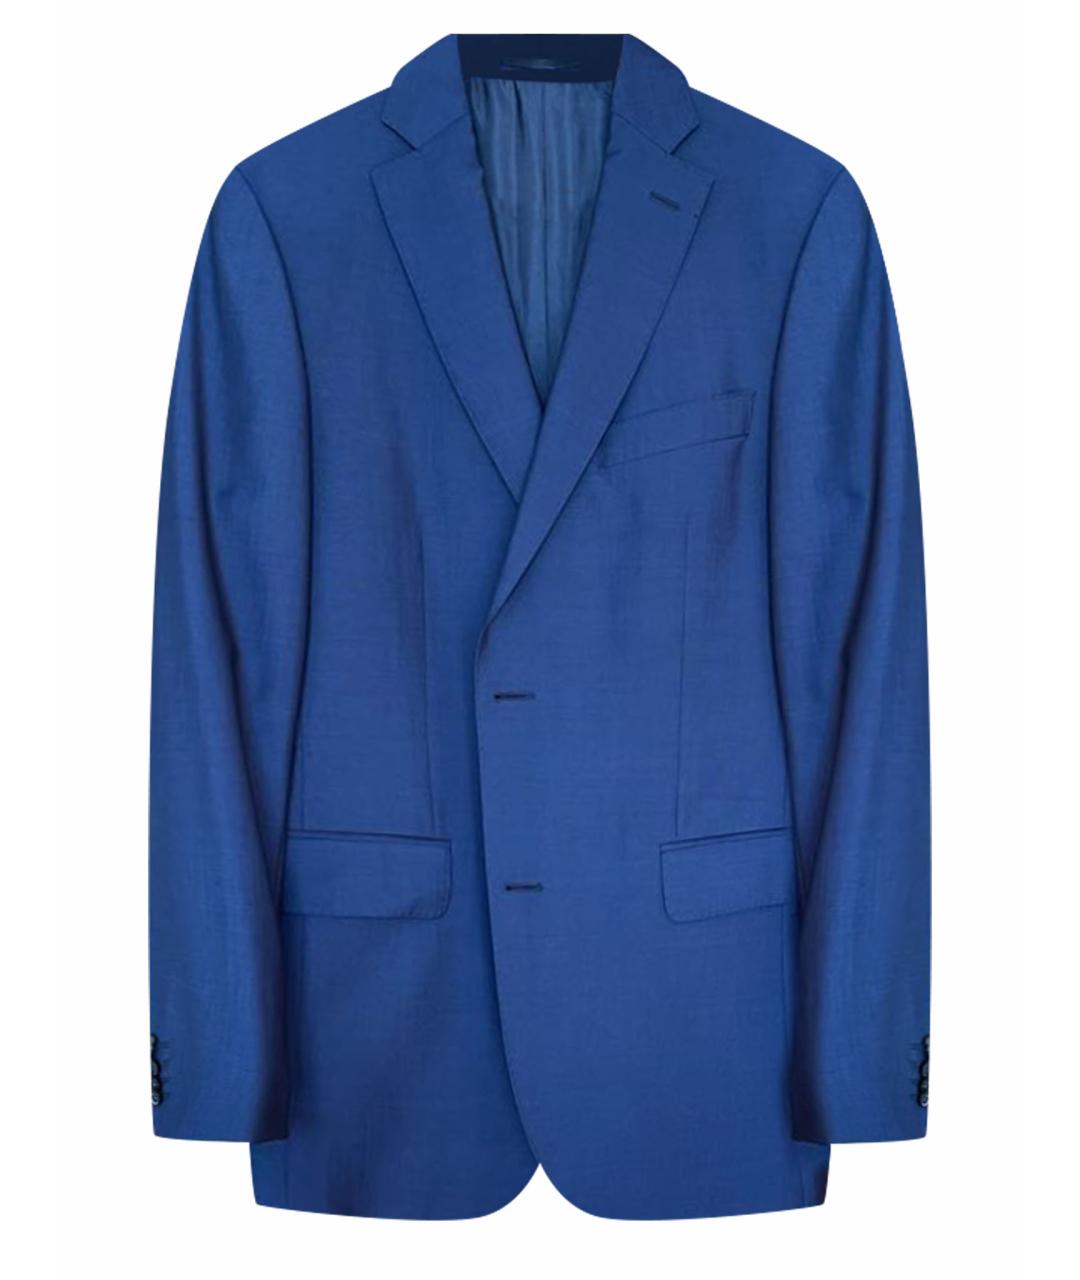 EDUARD DRESSLER Синий шерстяной жакет/пиджак, фото 1